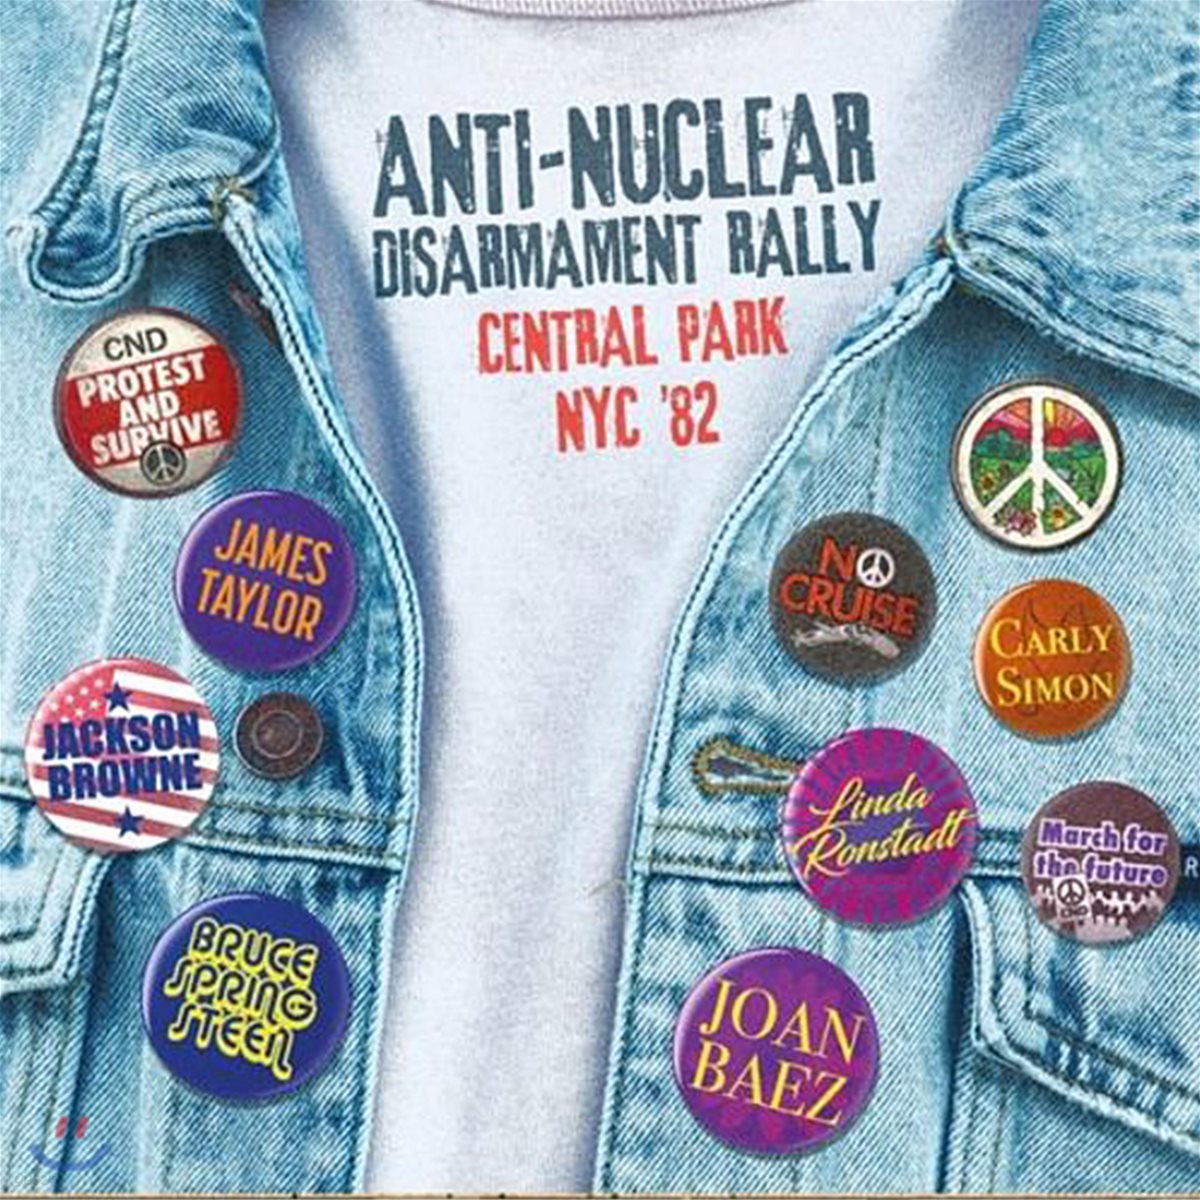 1982년 뉴욕 센트럴 파크 핵군축 반대 공연 실황 (Anti-Nuclear Disarmament Rally &#39;82)